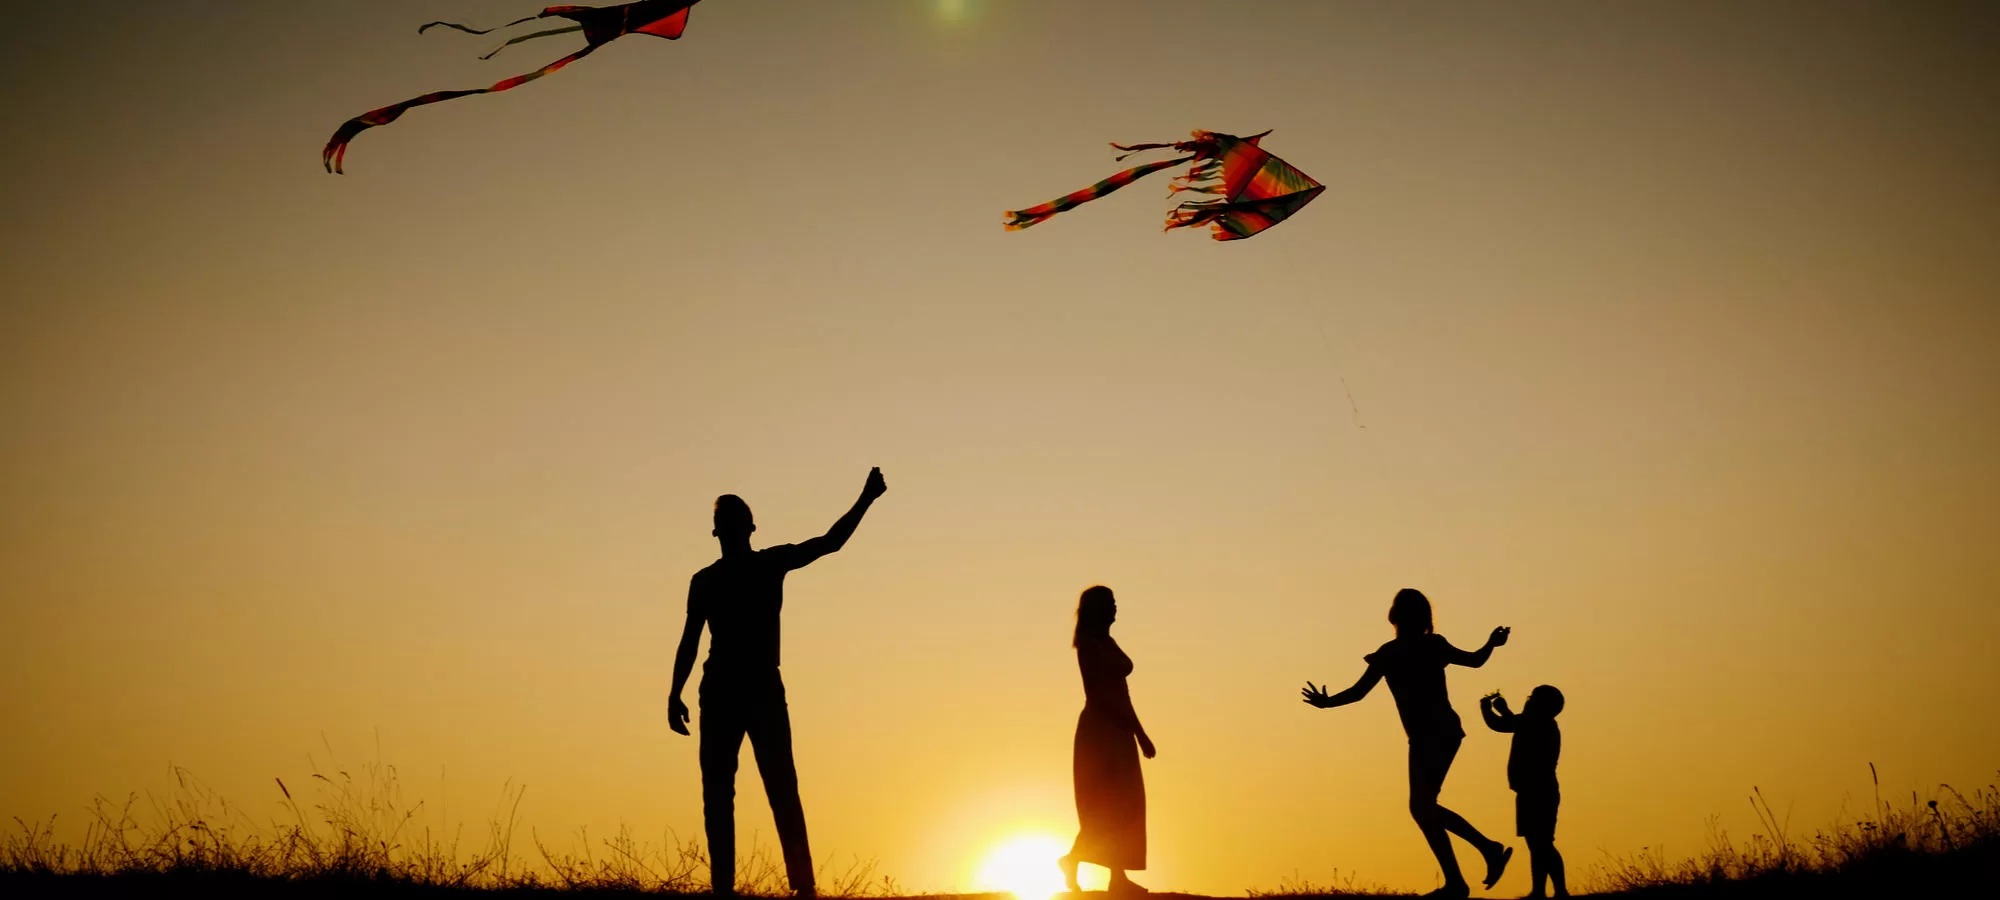 Family flying kites